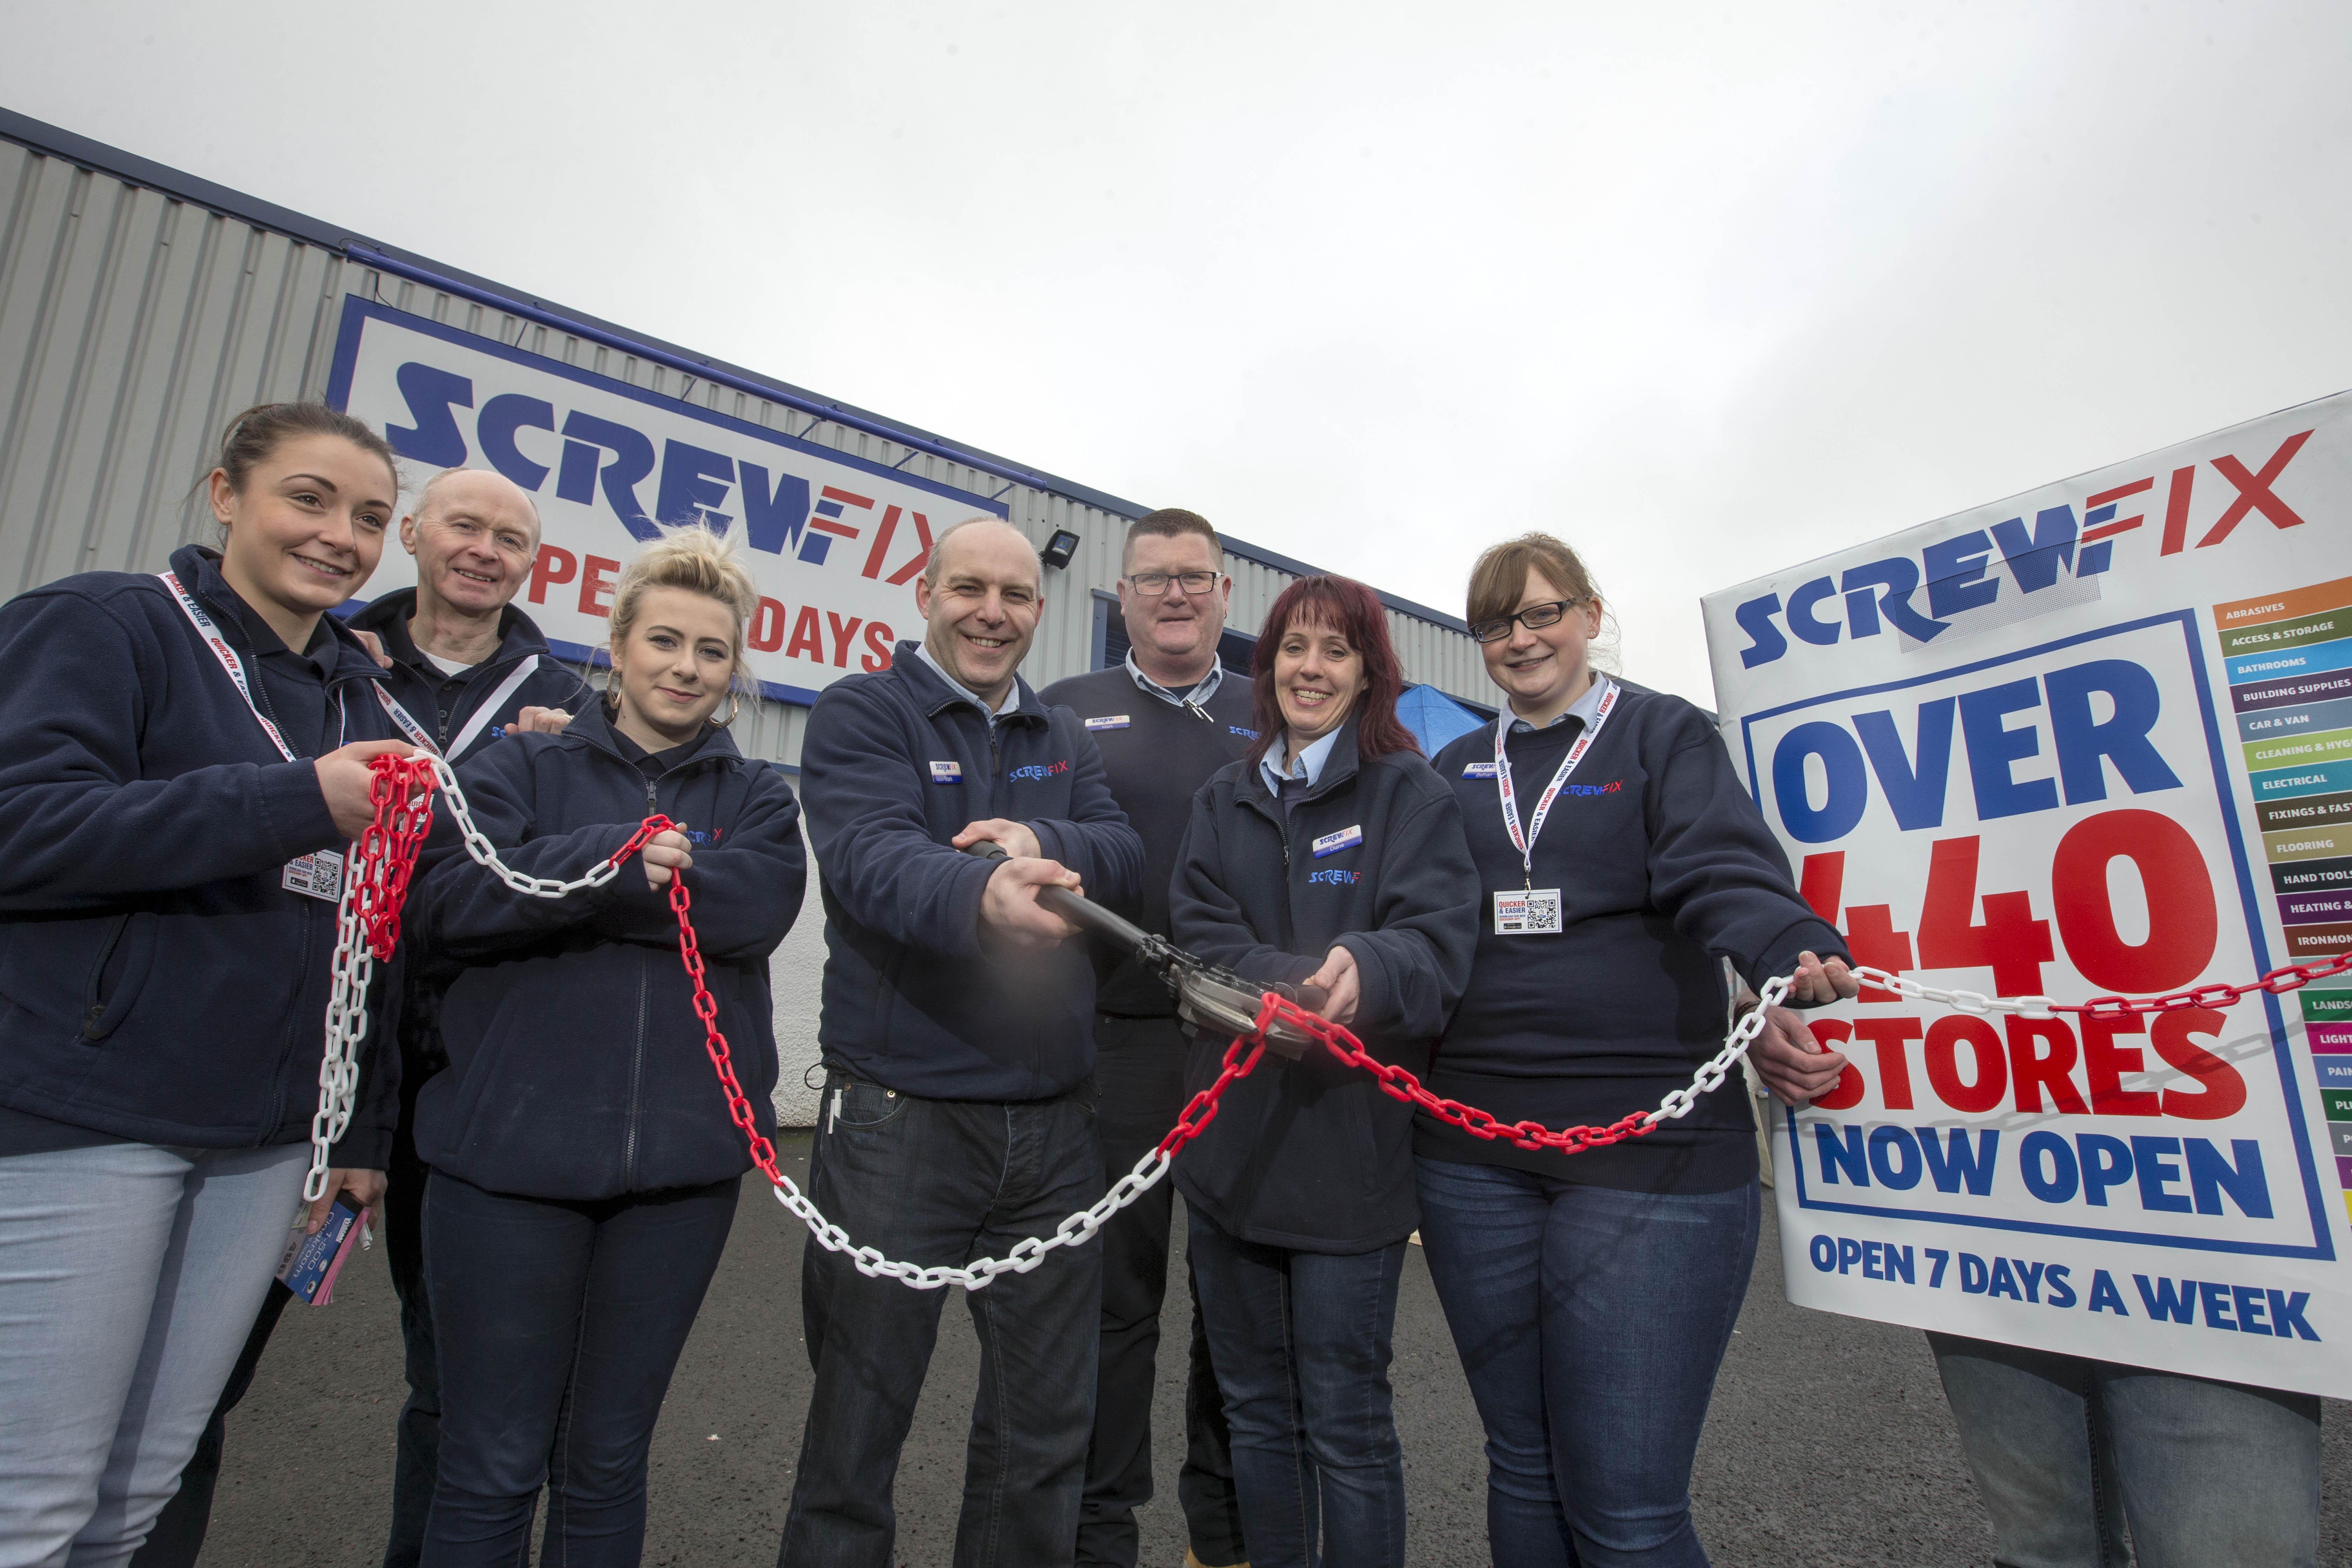 Cumbernauld’s first Screwfix store is declared a runaway success